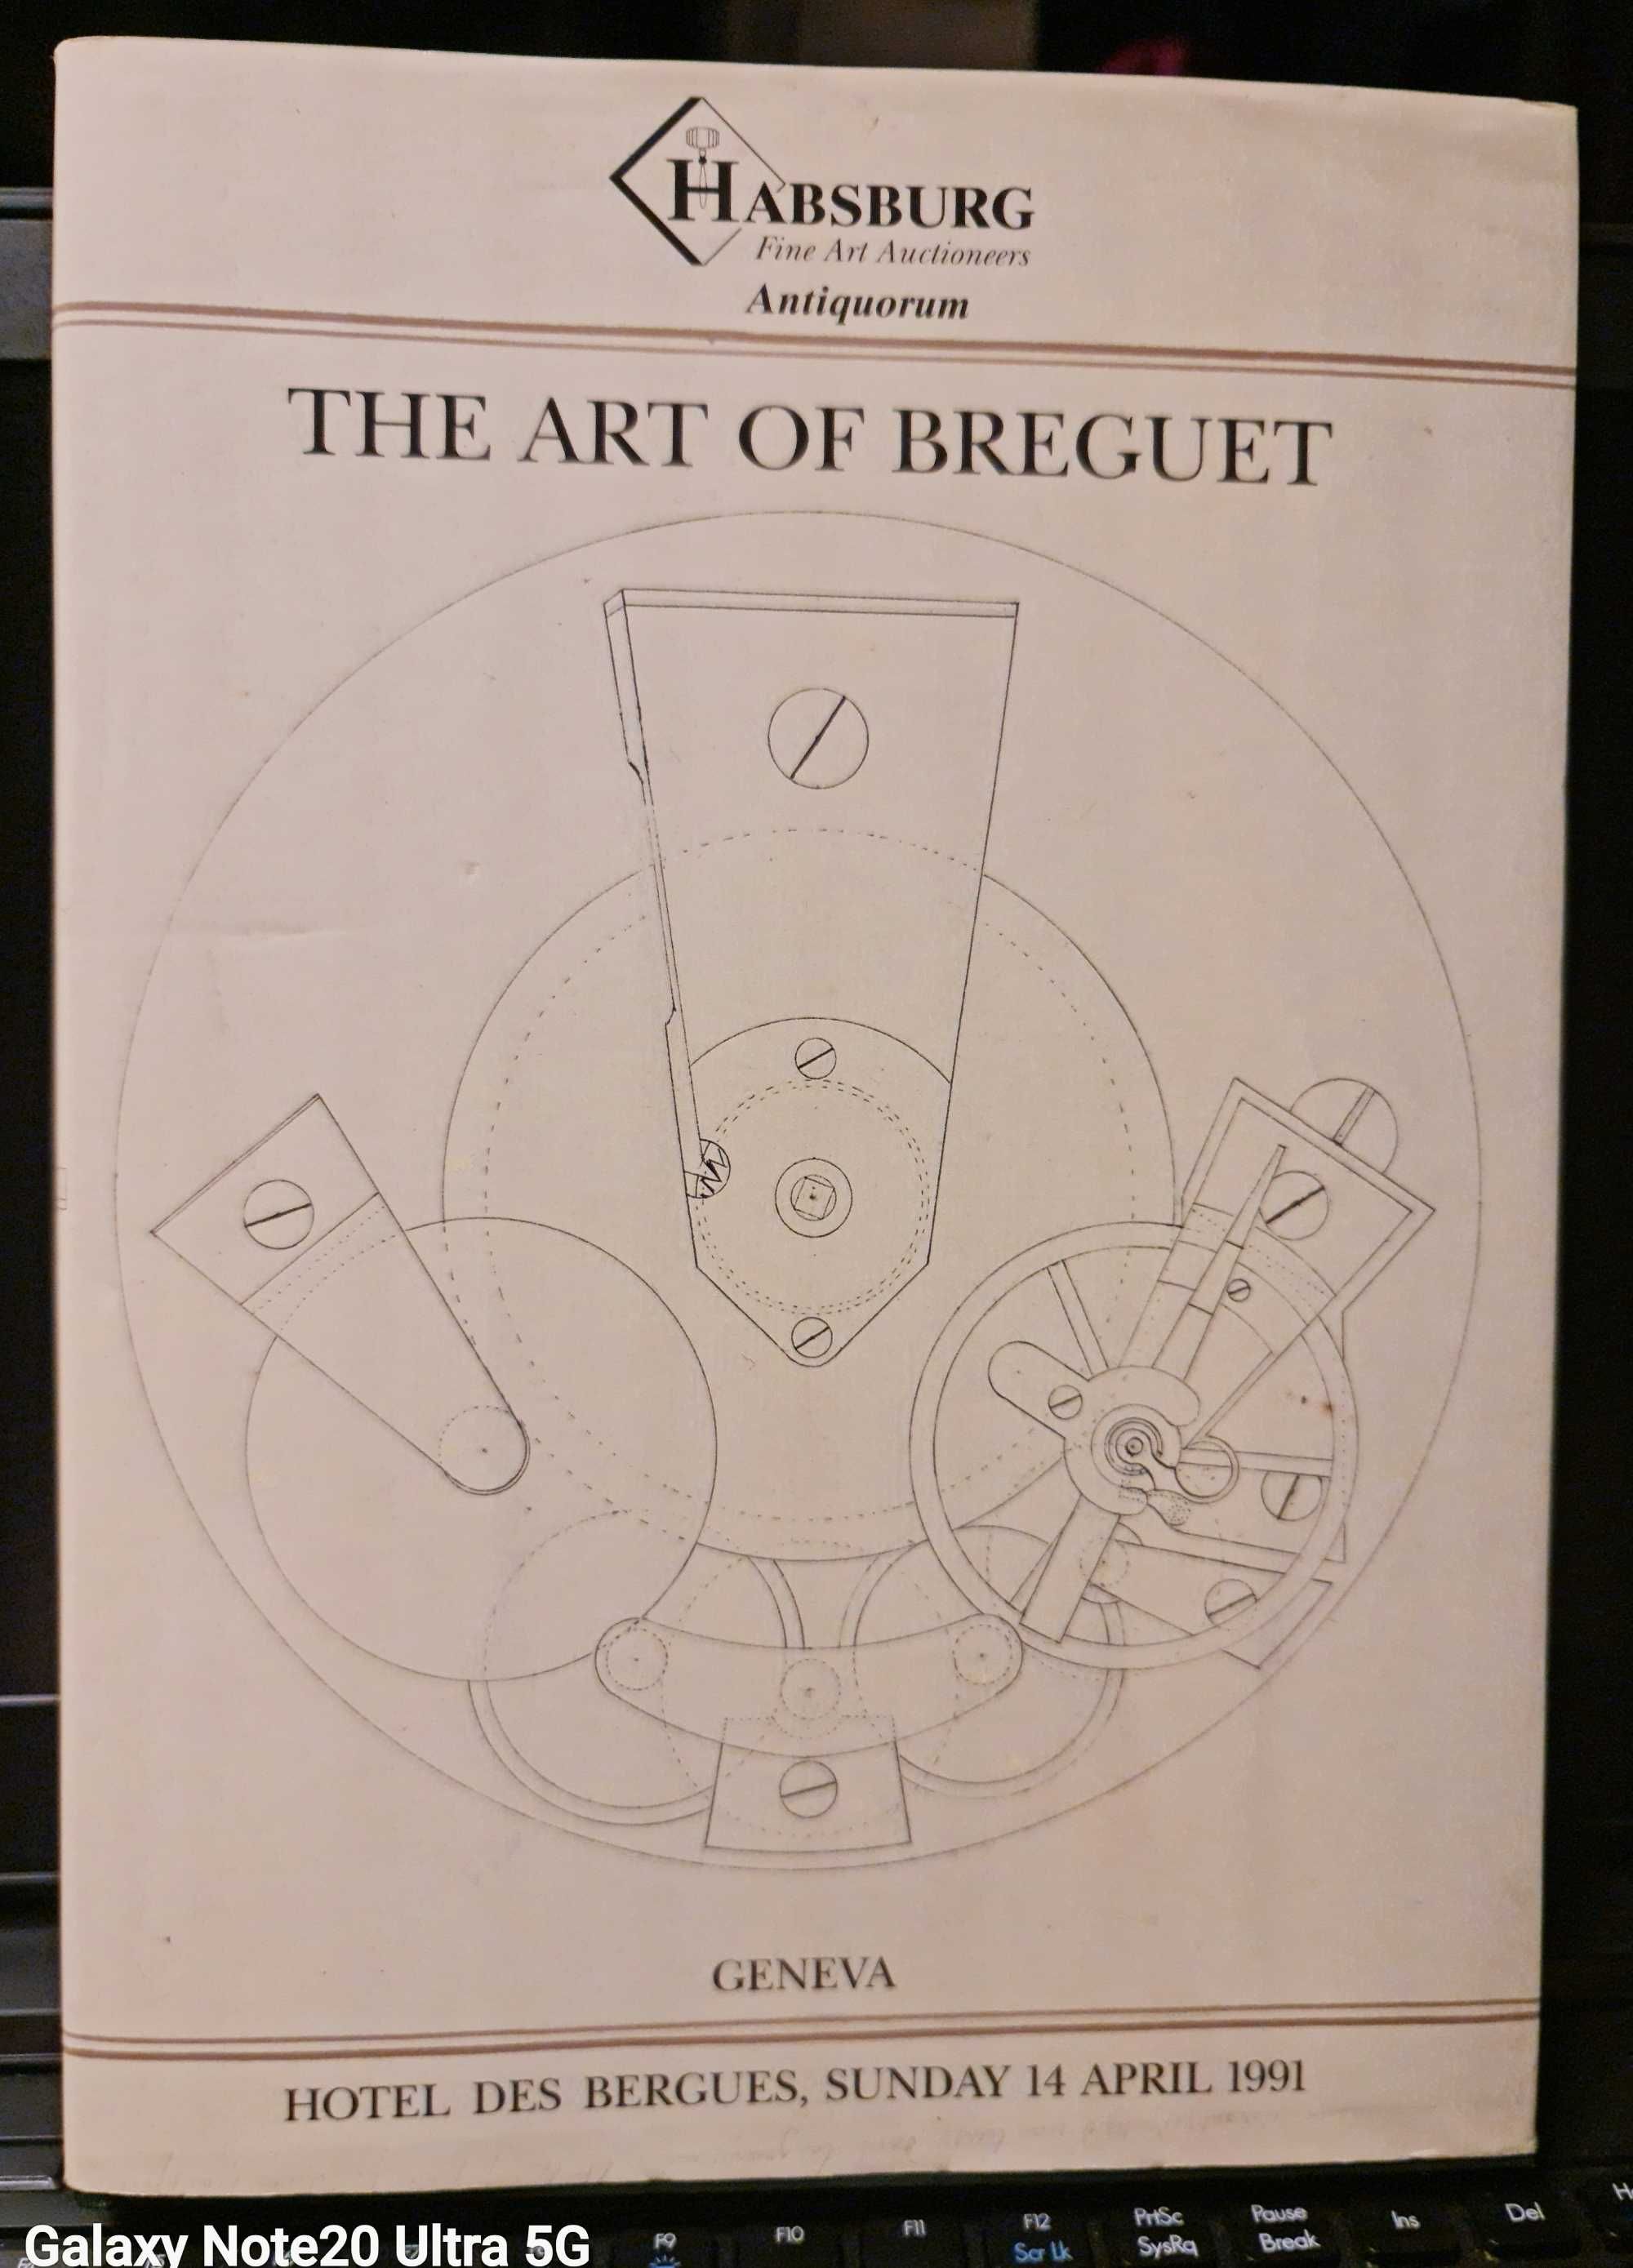 The Art of Breguet,o colectie de 204 ceasuri,editura Habsburg,1991.